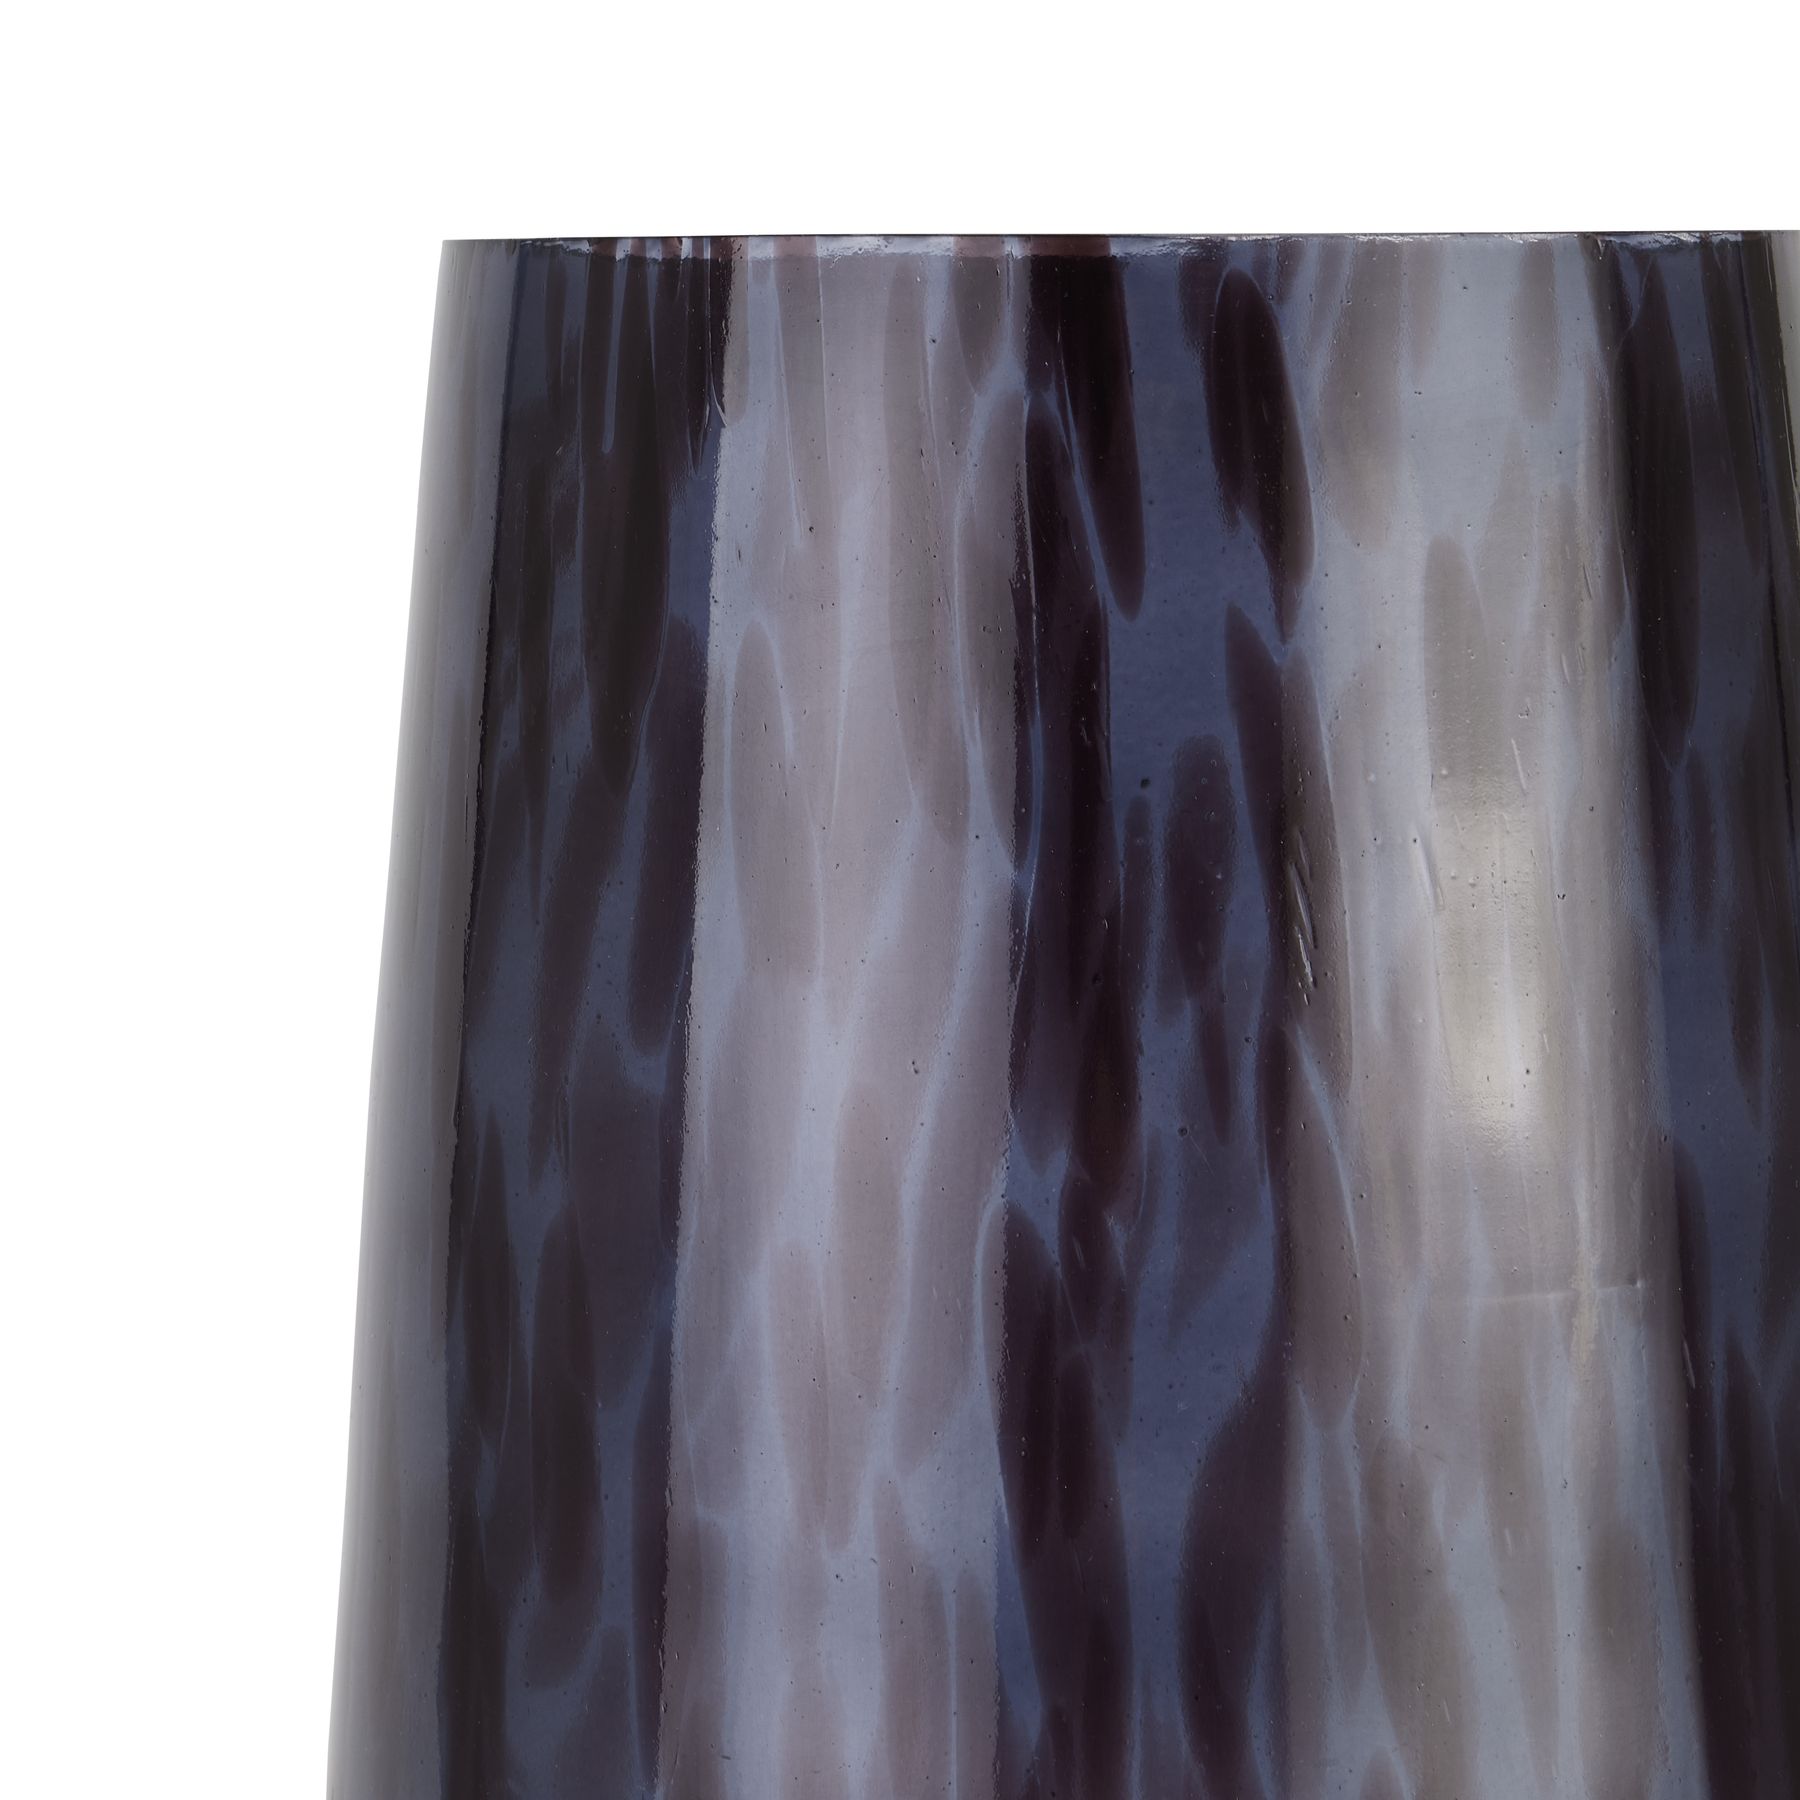 Black Dapple Tall Tapered Vase - Image 2